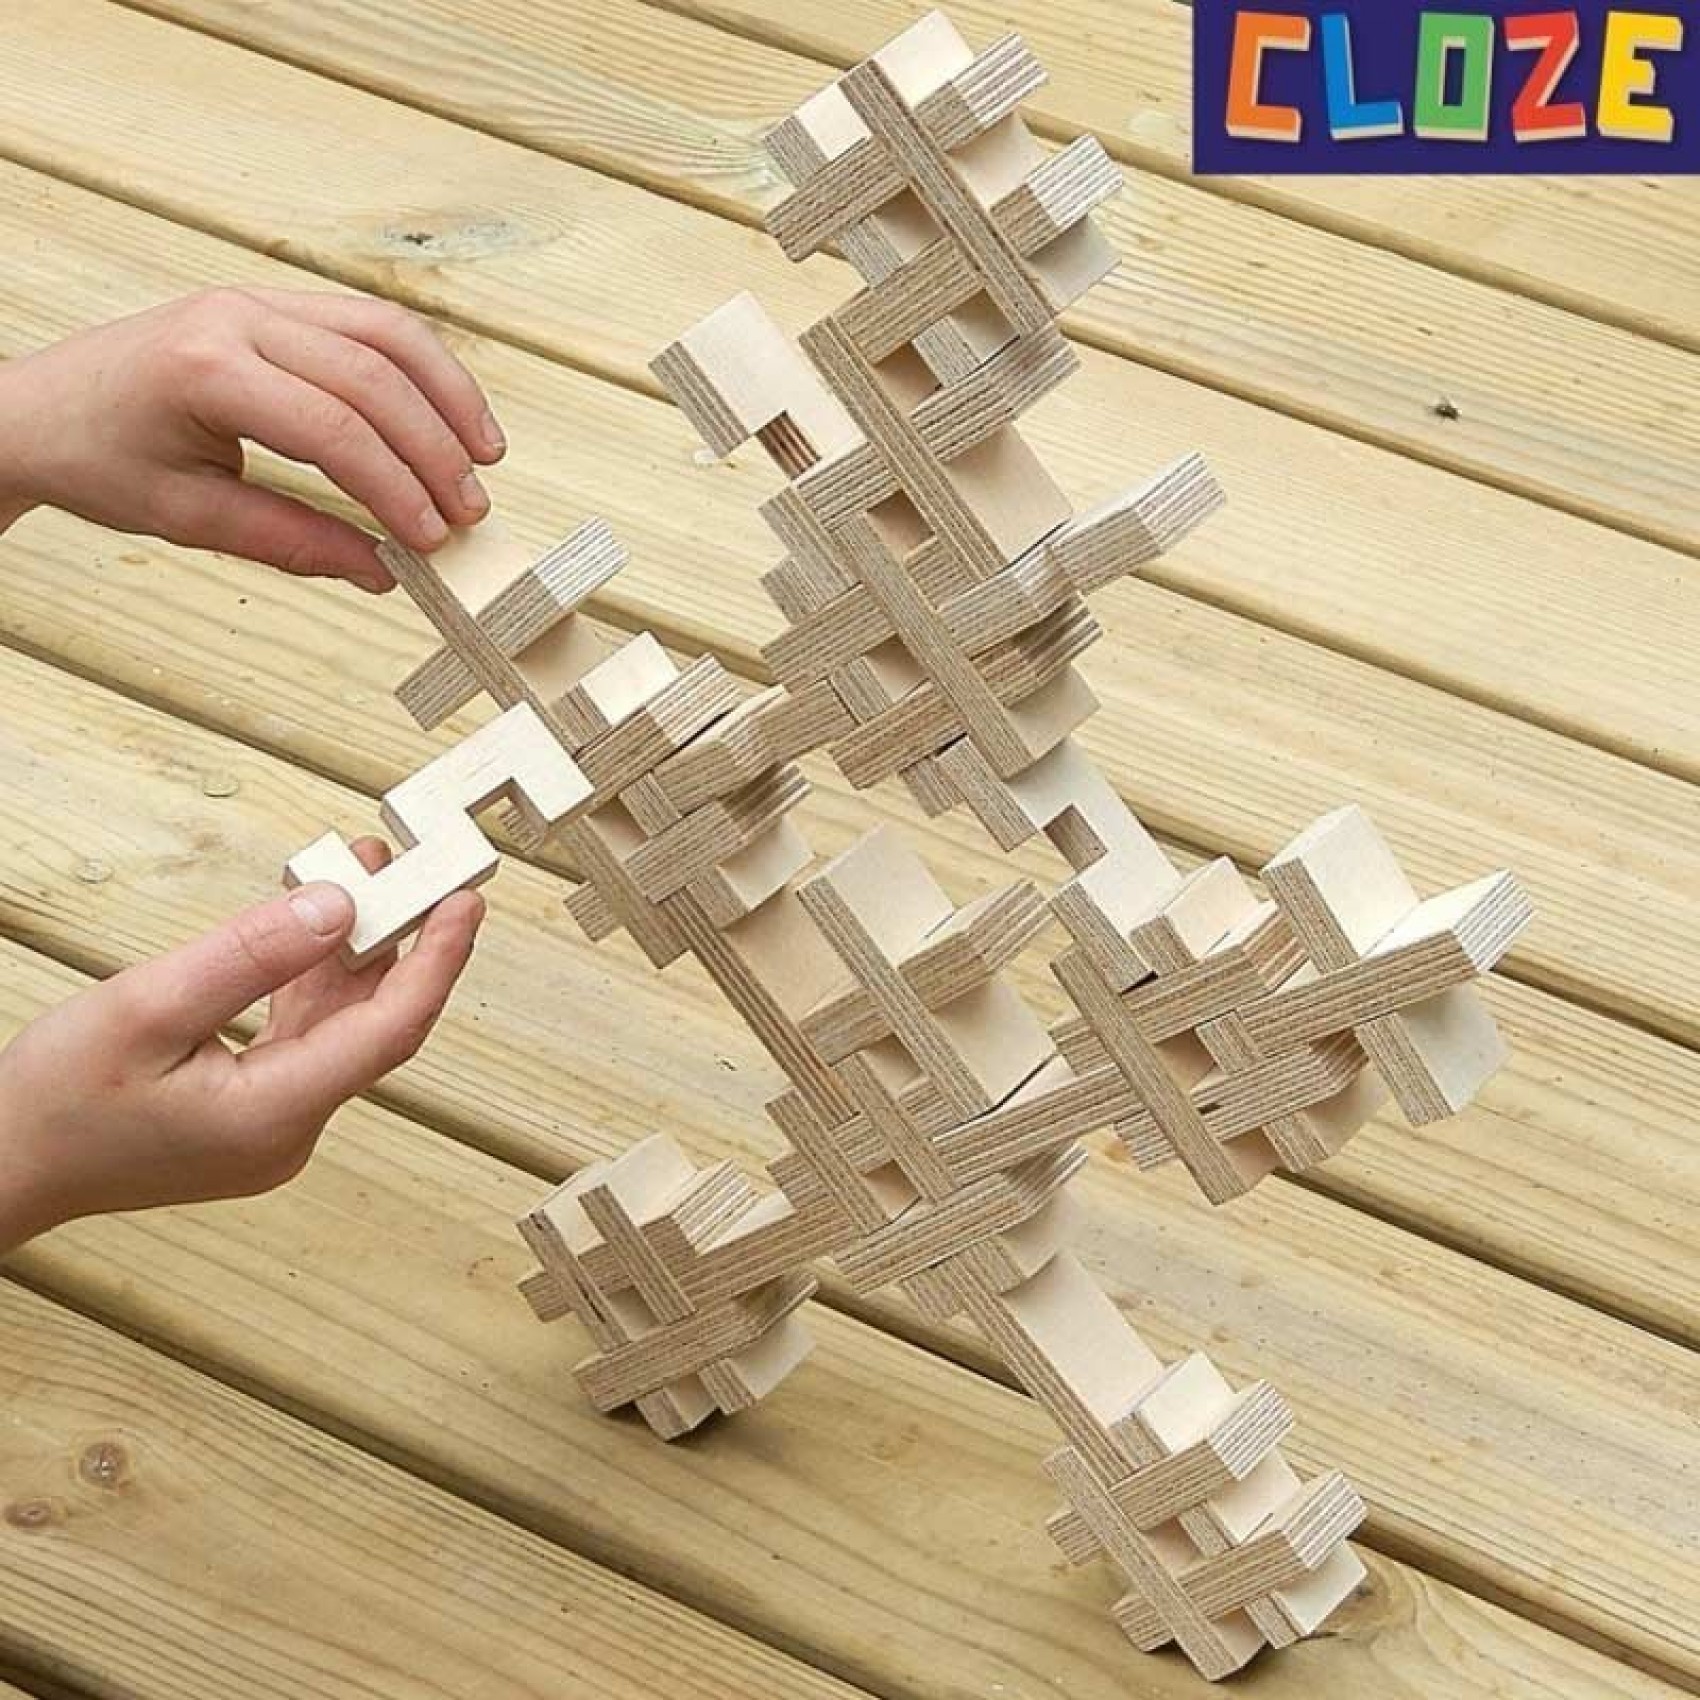 Jouets pour enfants - Puzzles en bois 9 pièces, 12 pièces, 15